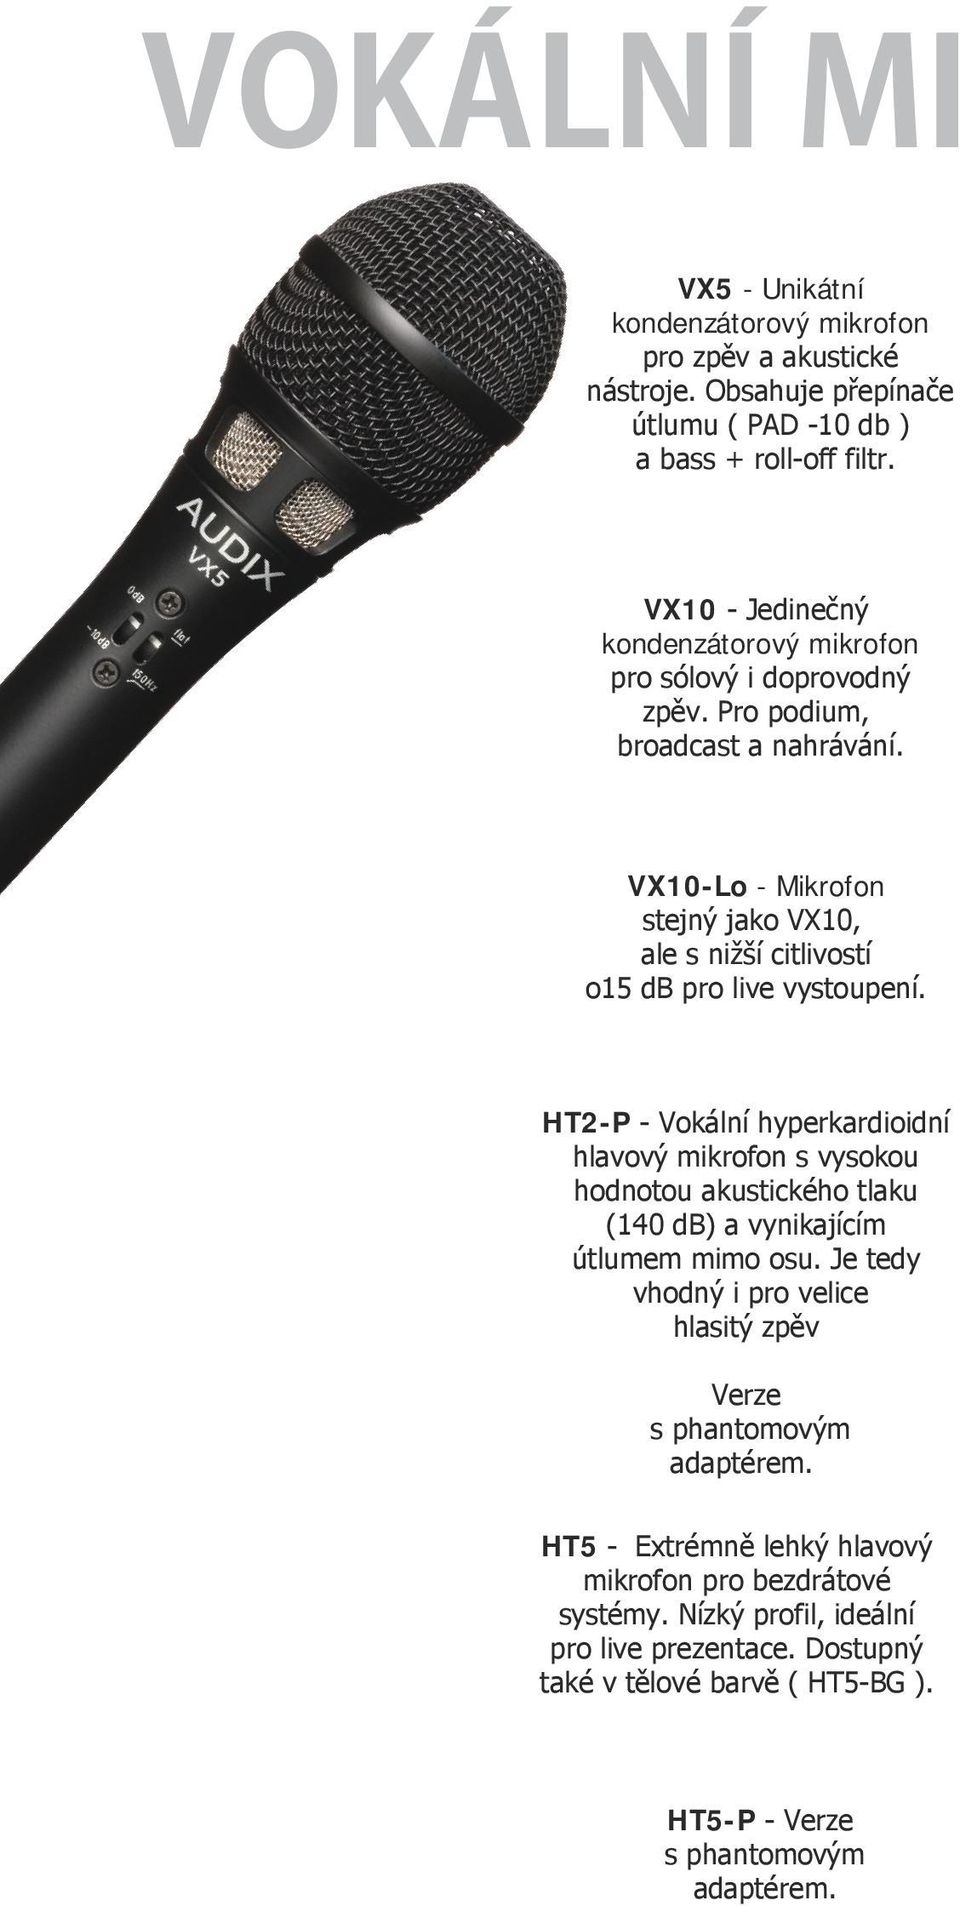 VX10-Lo - Mikrofon stejný jako VX10, ale s nižší citlivostí o15 db pro live vystoupení.